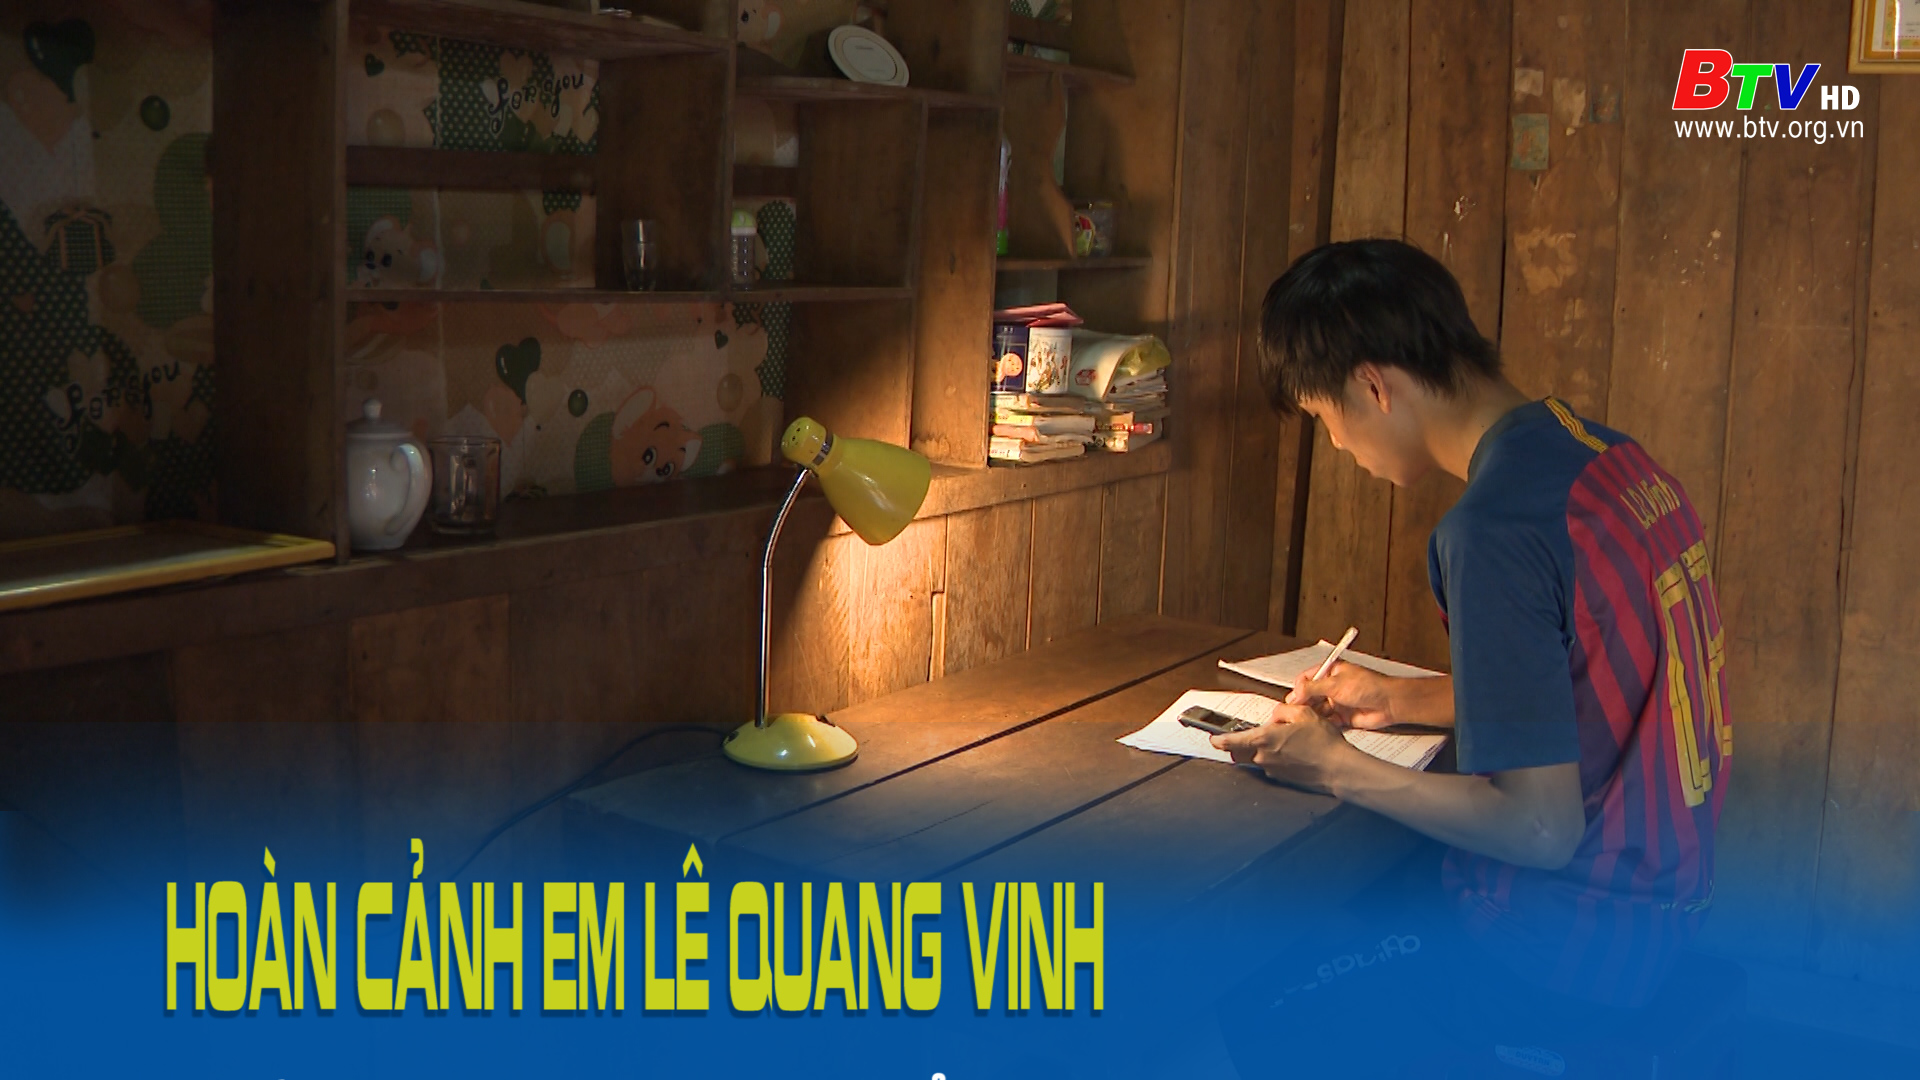 Thắp sáng ước mơ xanh - Hoàn cảnh em Lê Quang Vinh